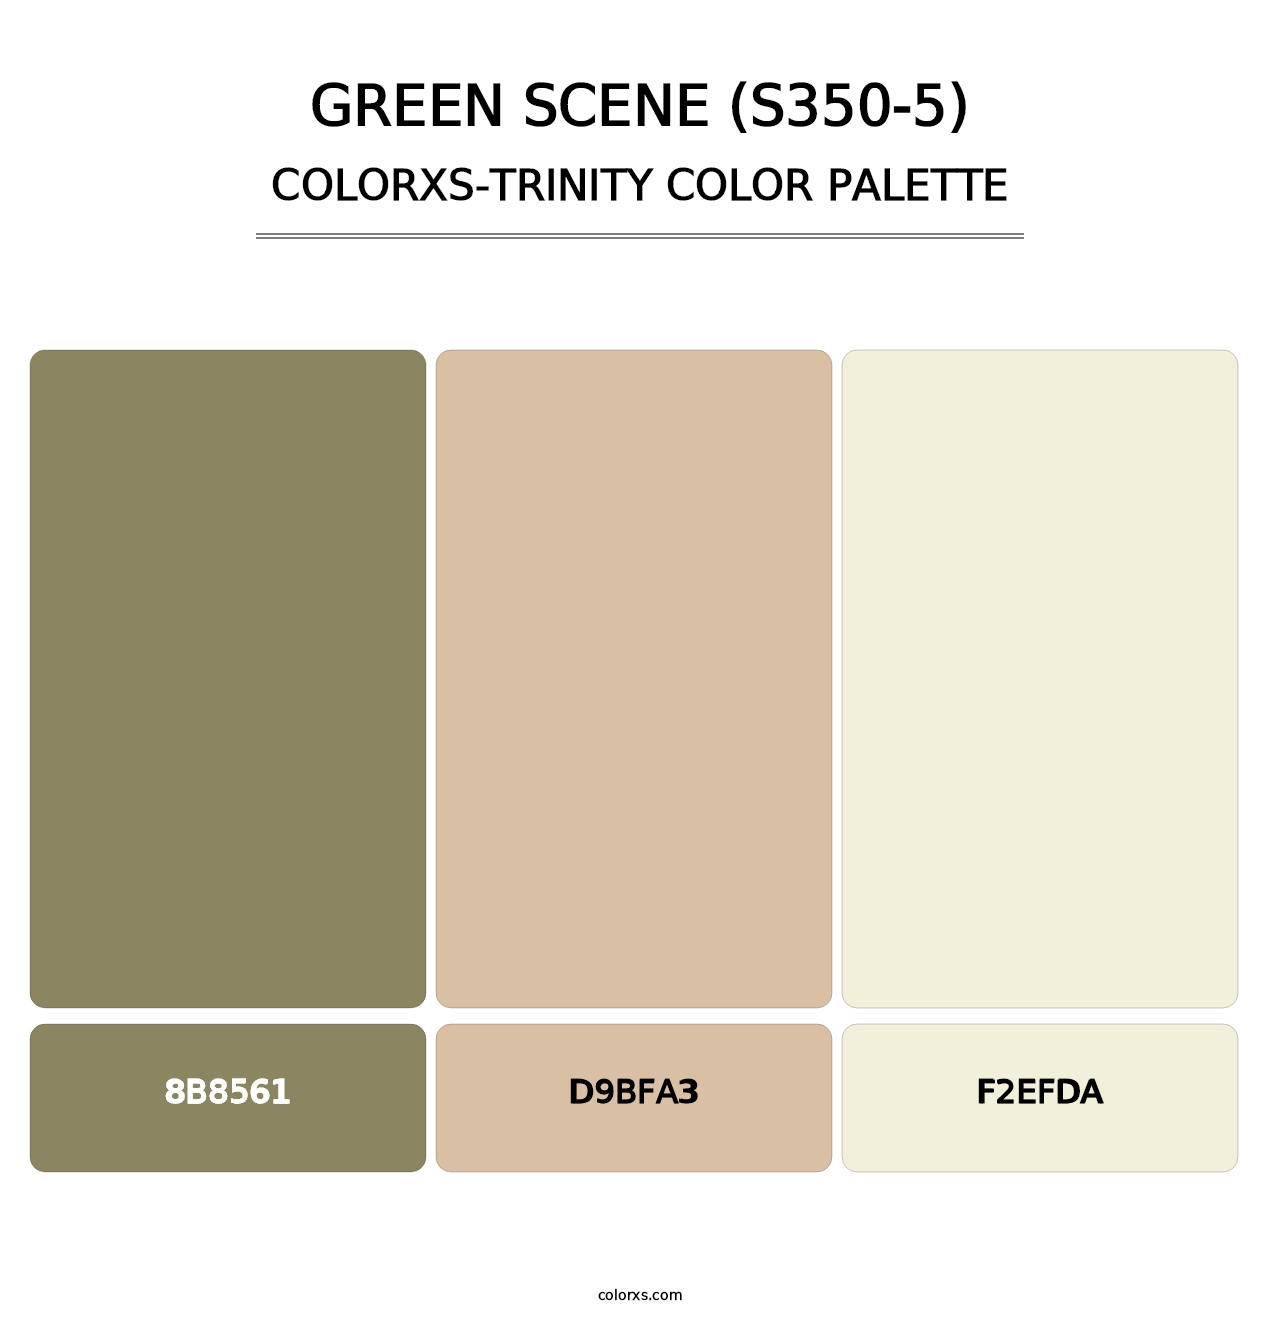 Green Scene (S350-5) - Colorxs Trinity Palette